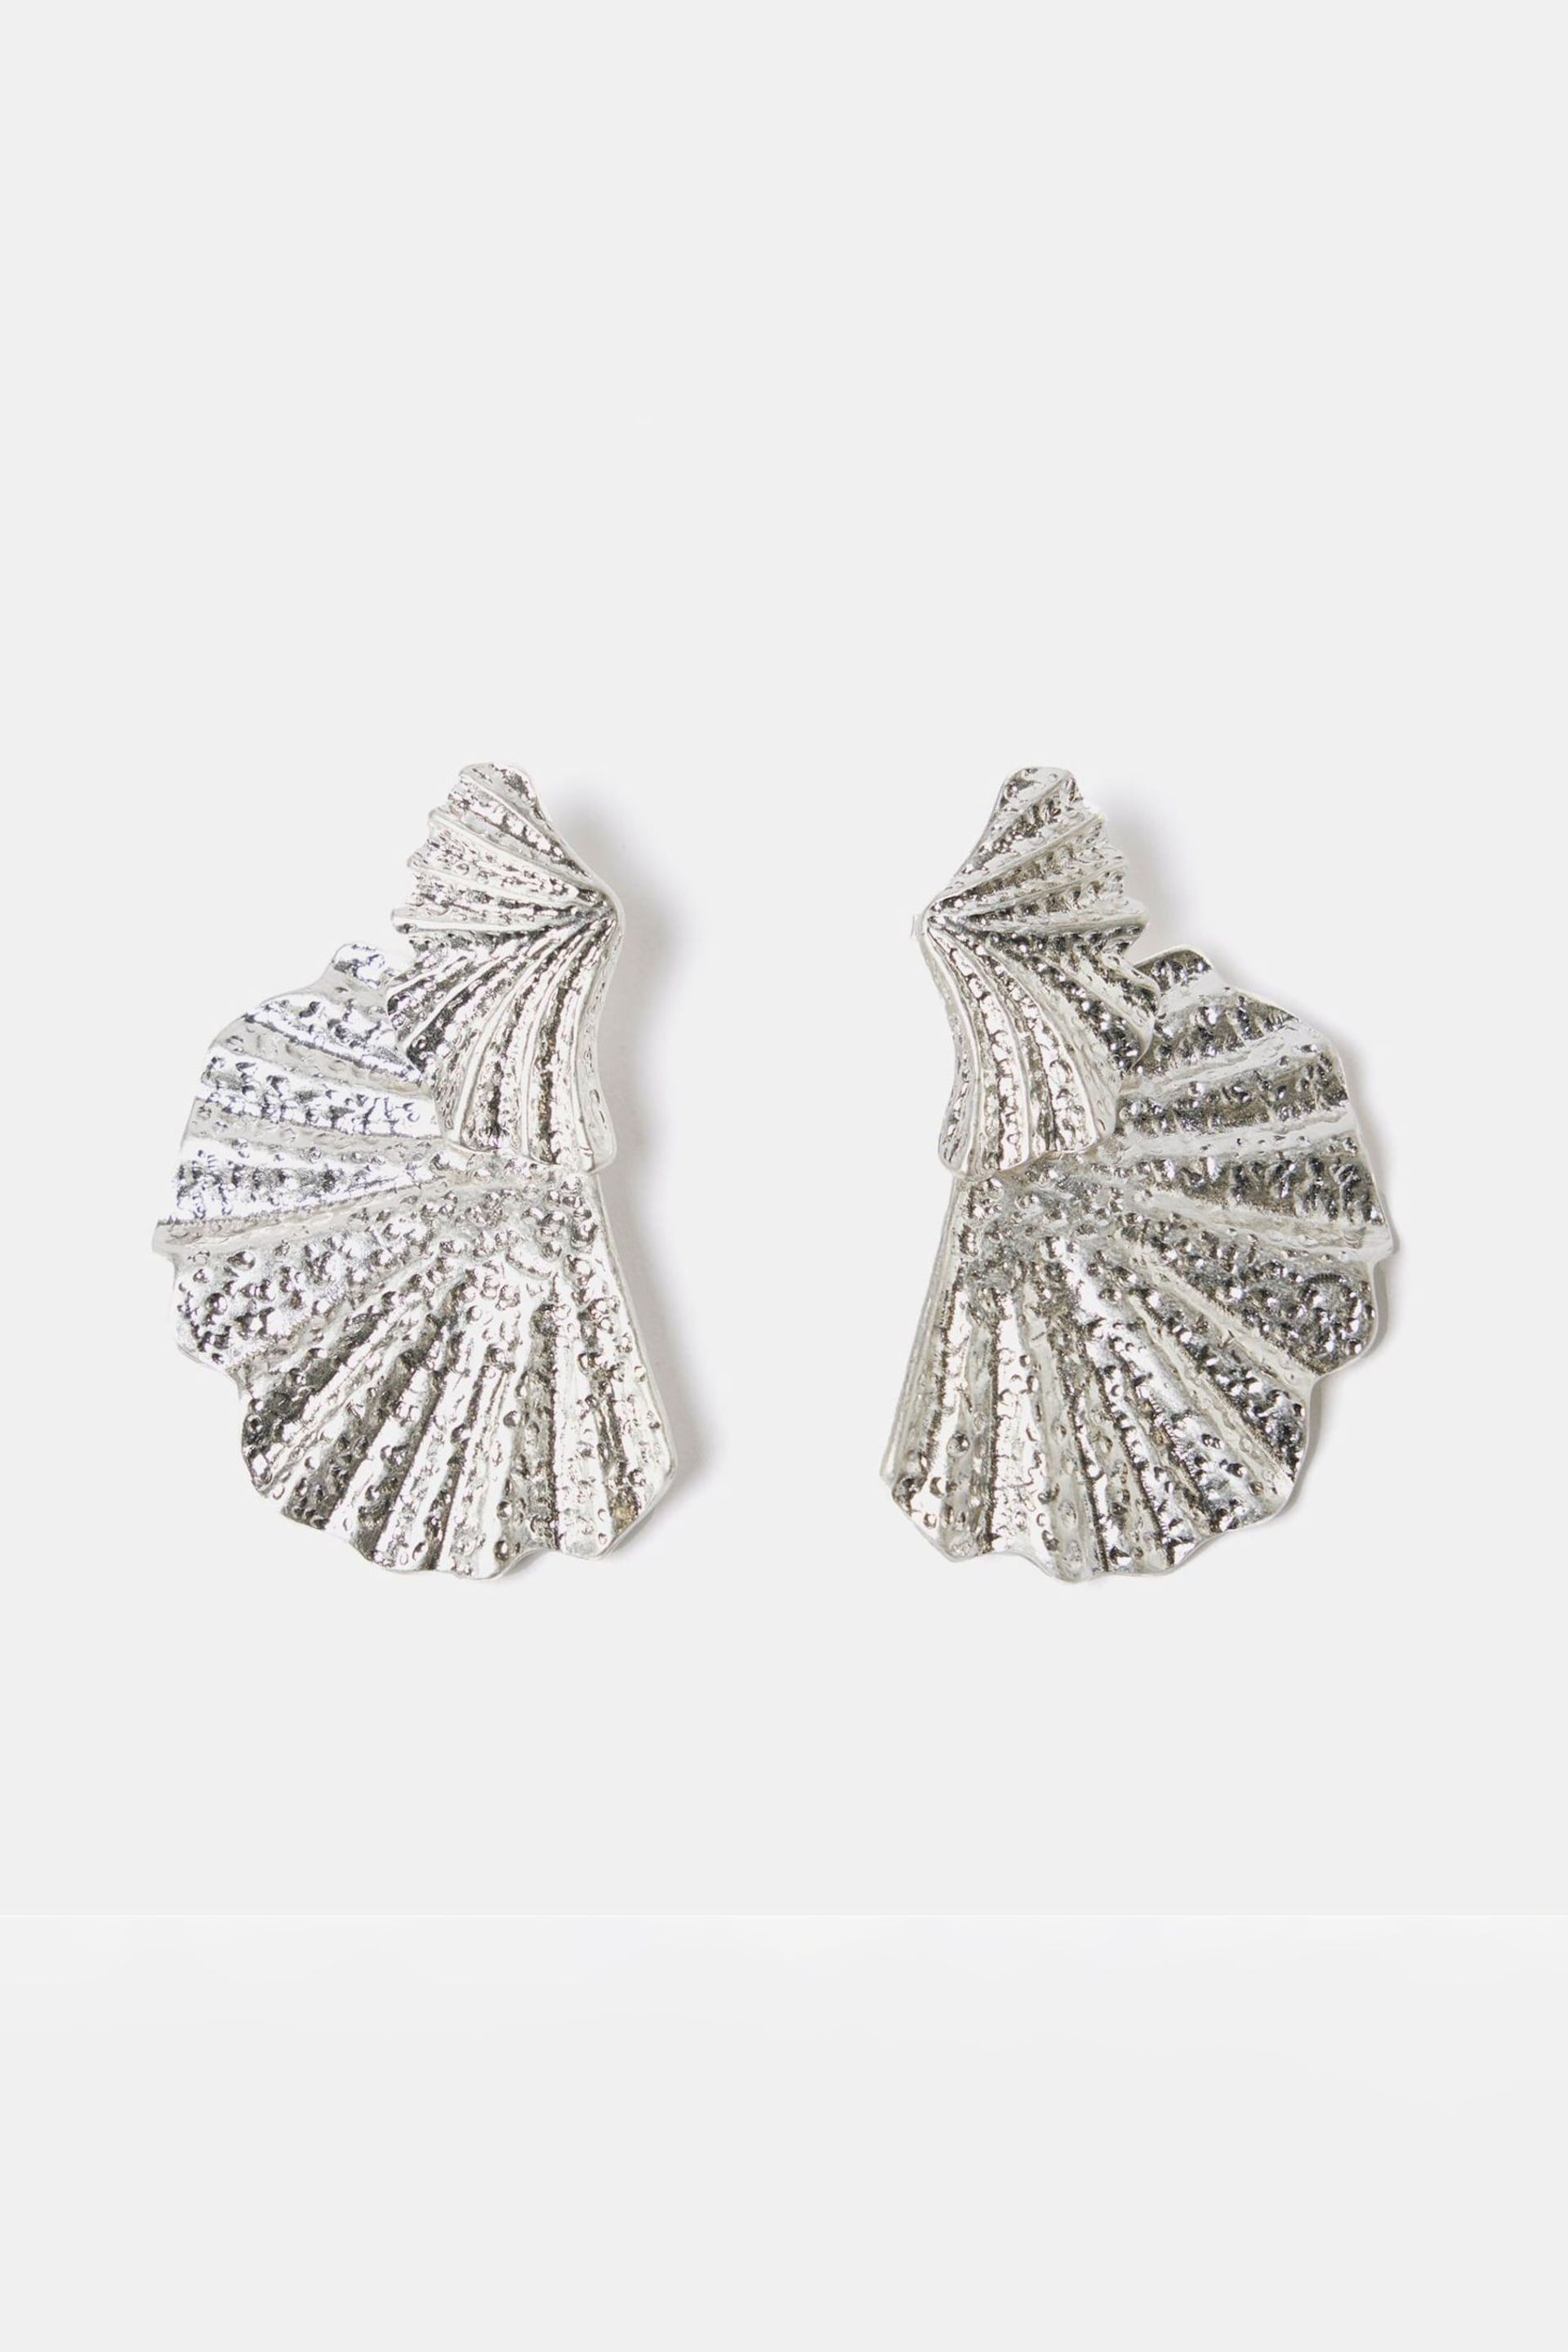 Mint Velvet Silver Tone Fan Earrings - Image 4 of 5